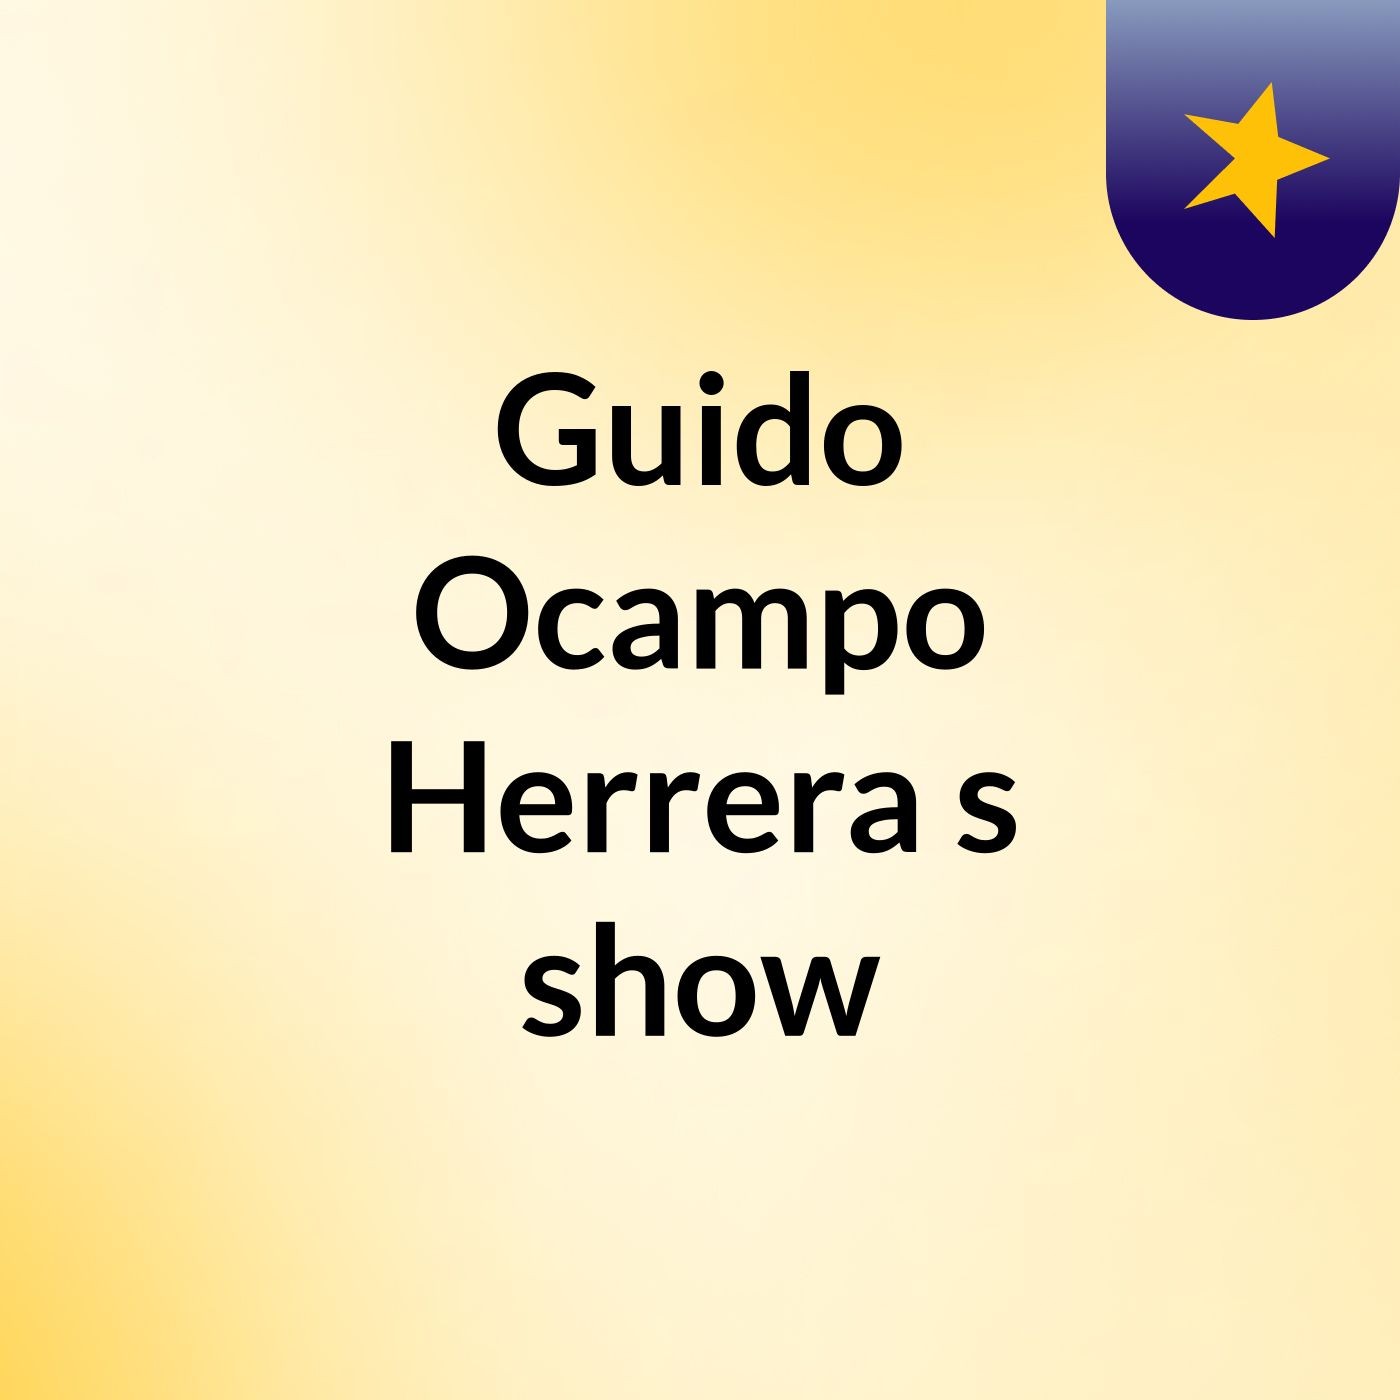 Guido Ocampo Herrera's show